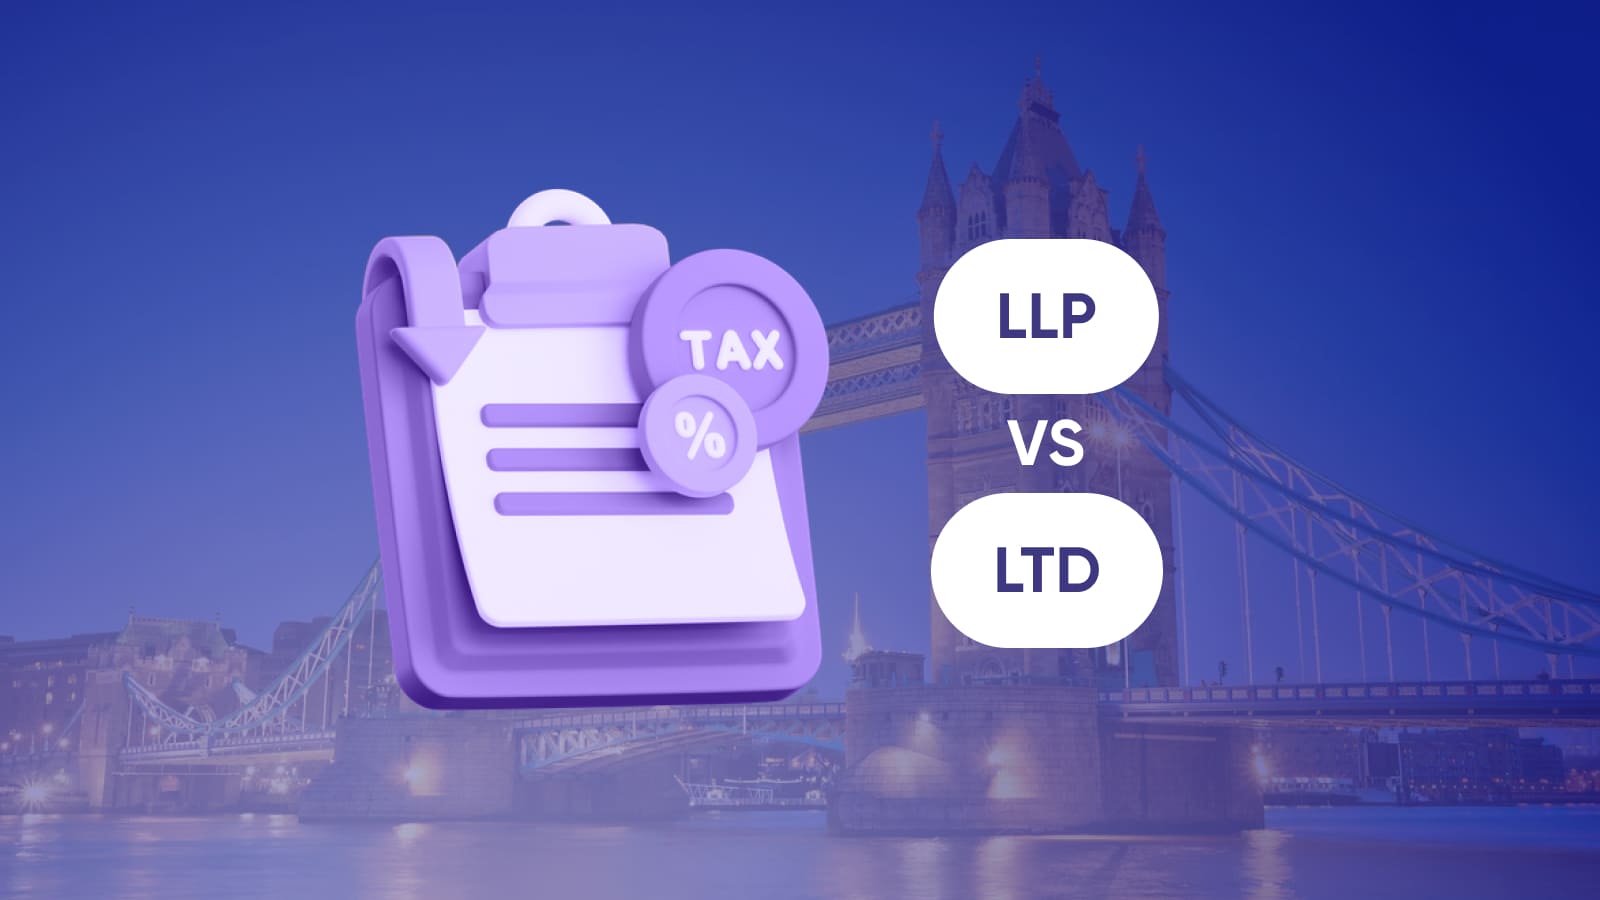 Партнерства отличаются от LTD принципами налогообложения.